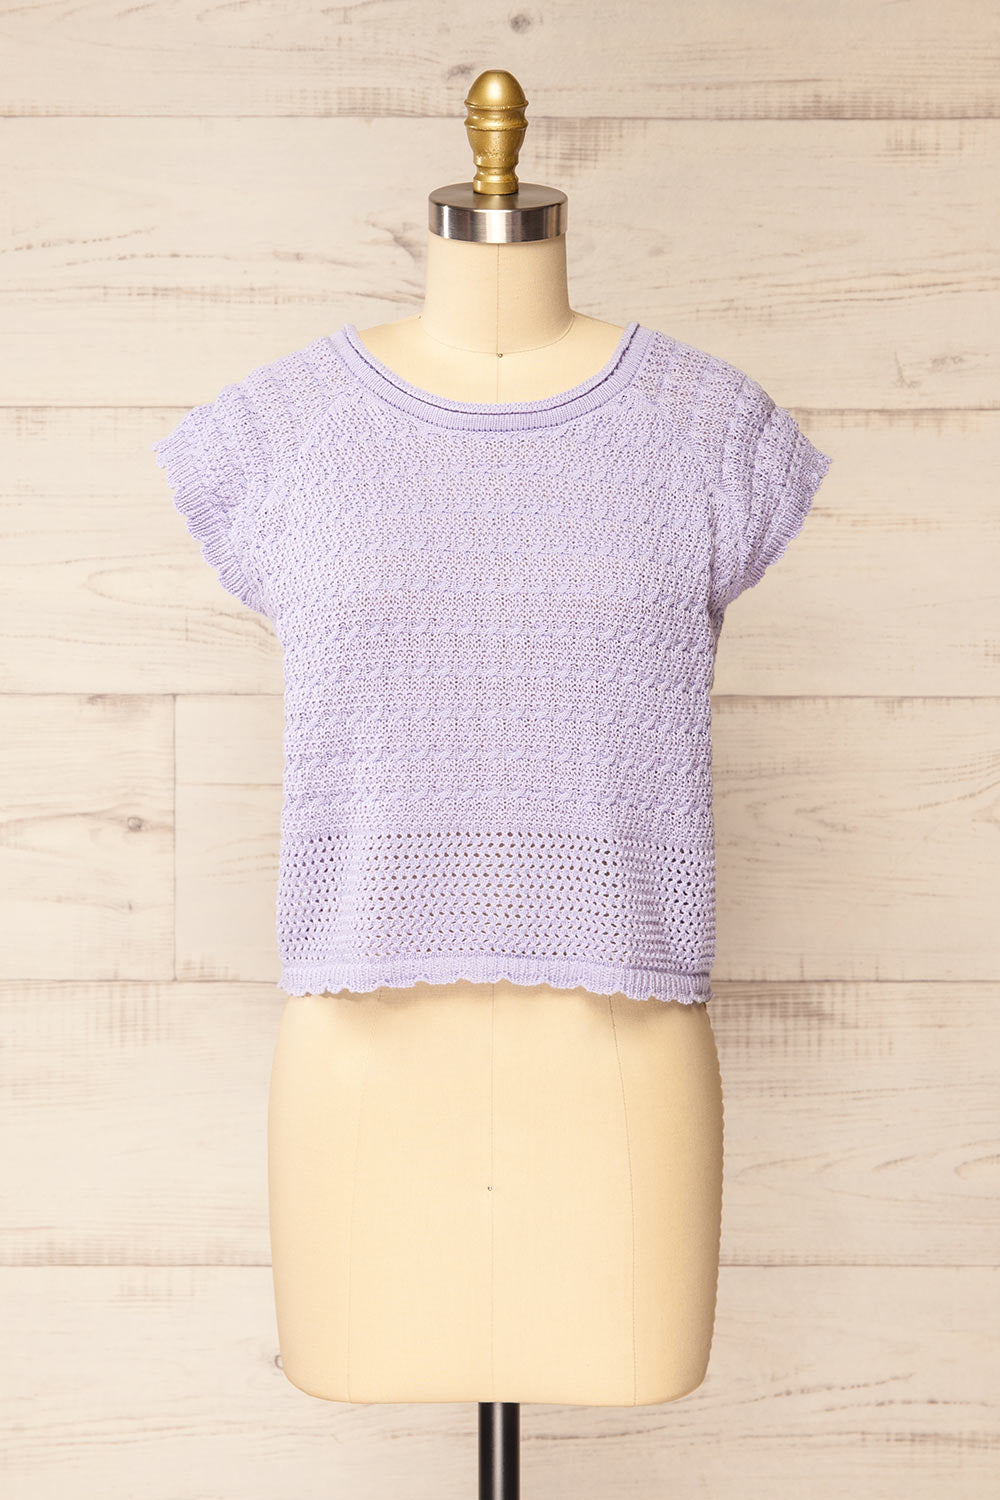 Jampruca Lilac Crochet Top | La petite garçonne front view